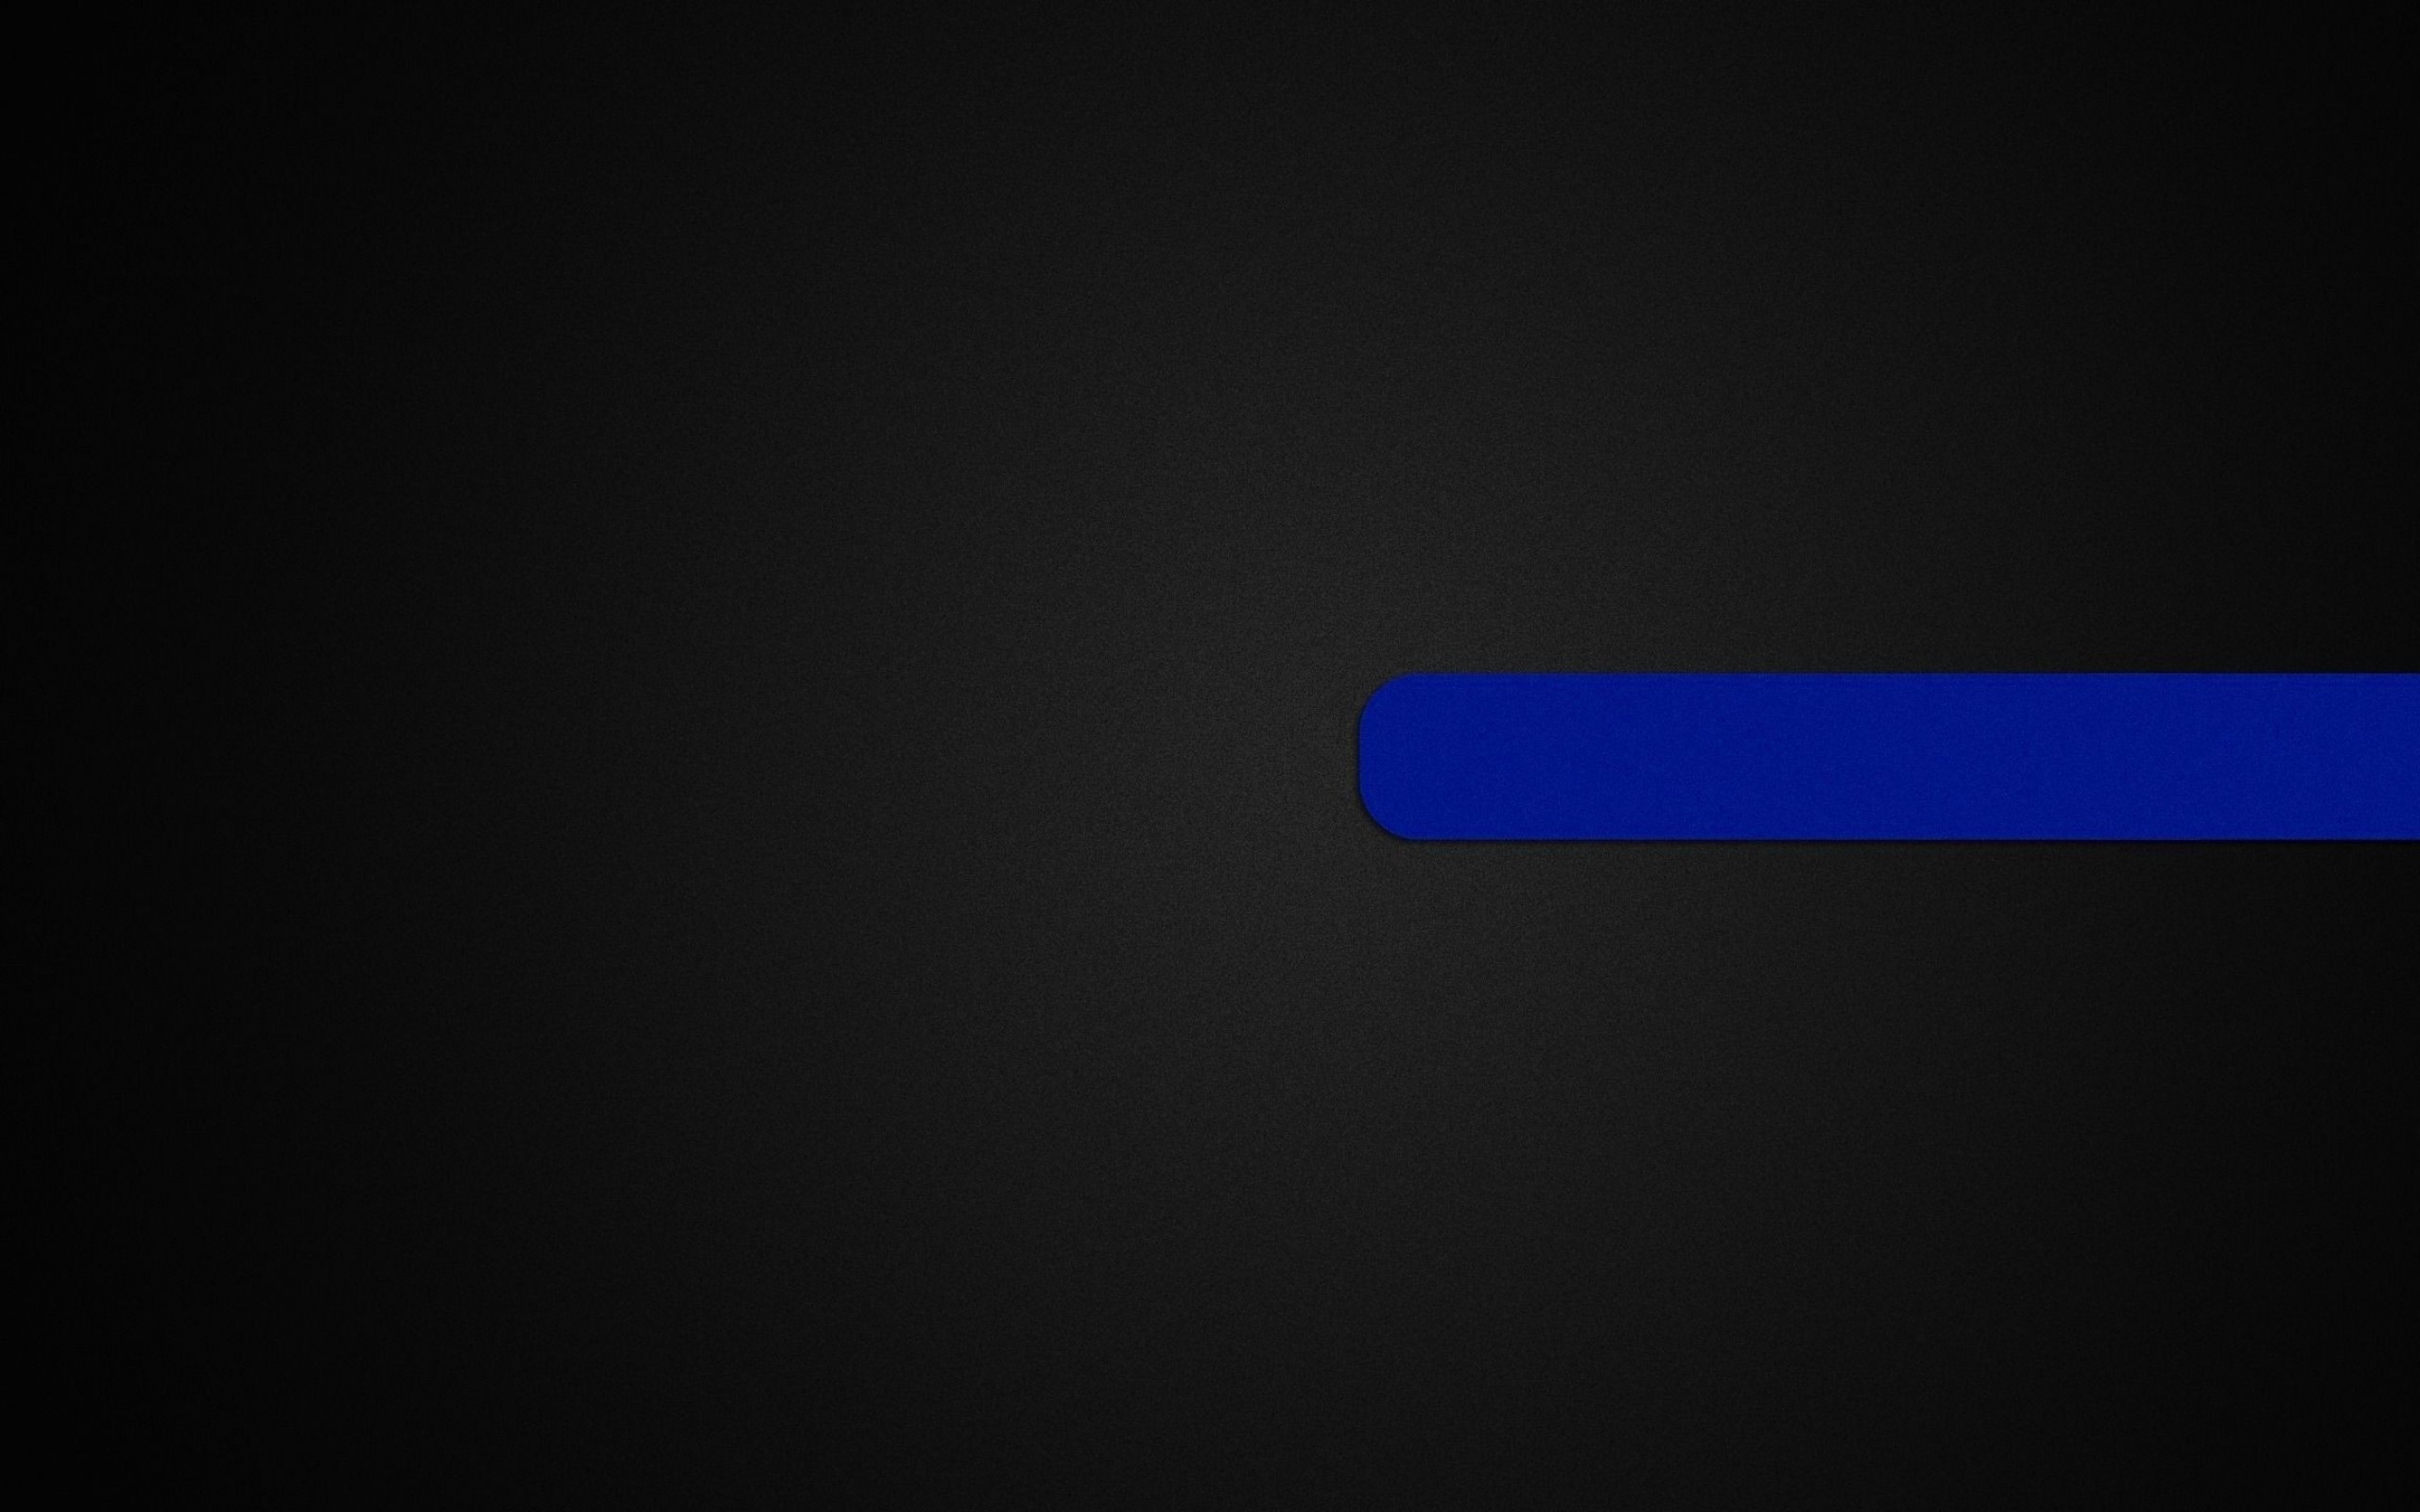 Ютуб черная полоса. Черно синие обои. Темно синие обои. Черная шапка для канала. Синие полосы на черном фоне.